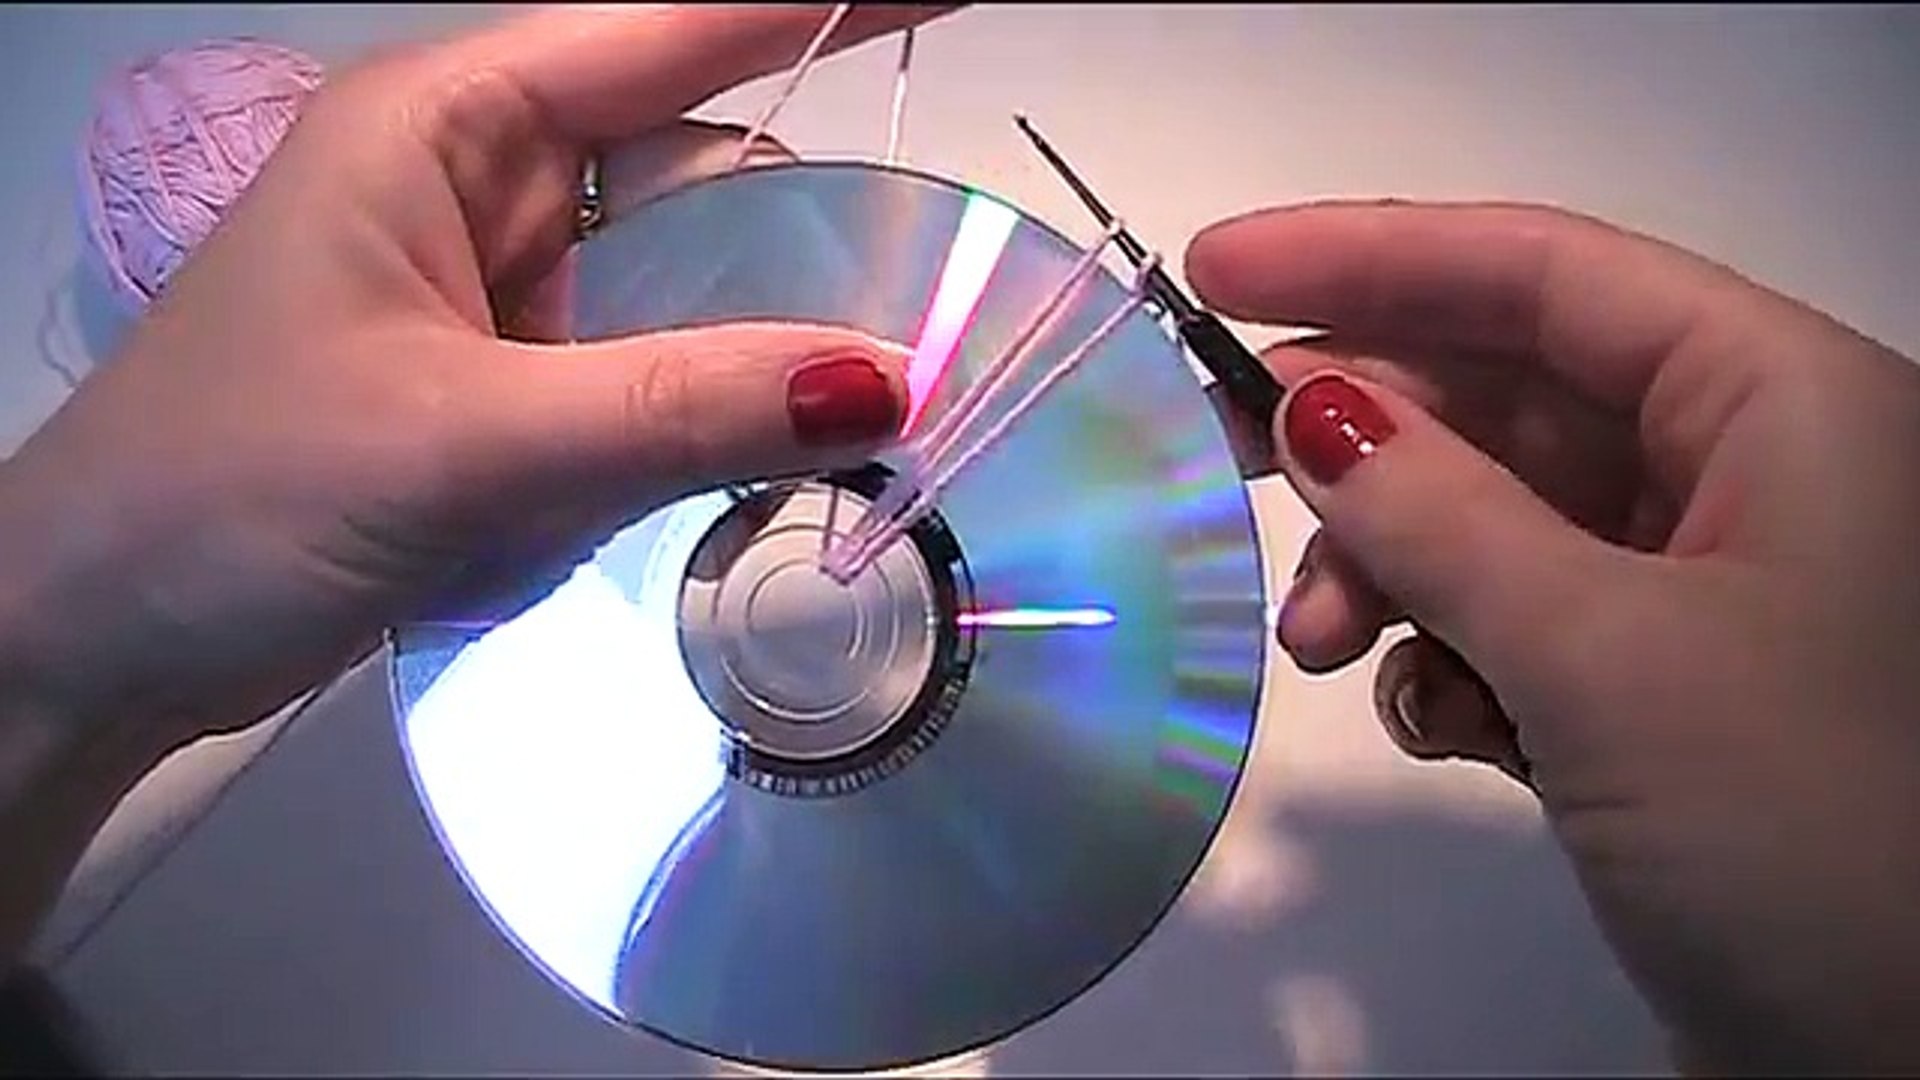 Anleitung - Mit einer CD eine Tasche häkeln 1 - video Dailymotion